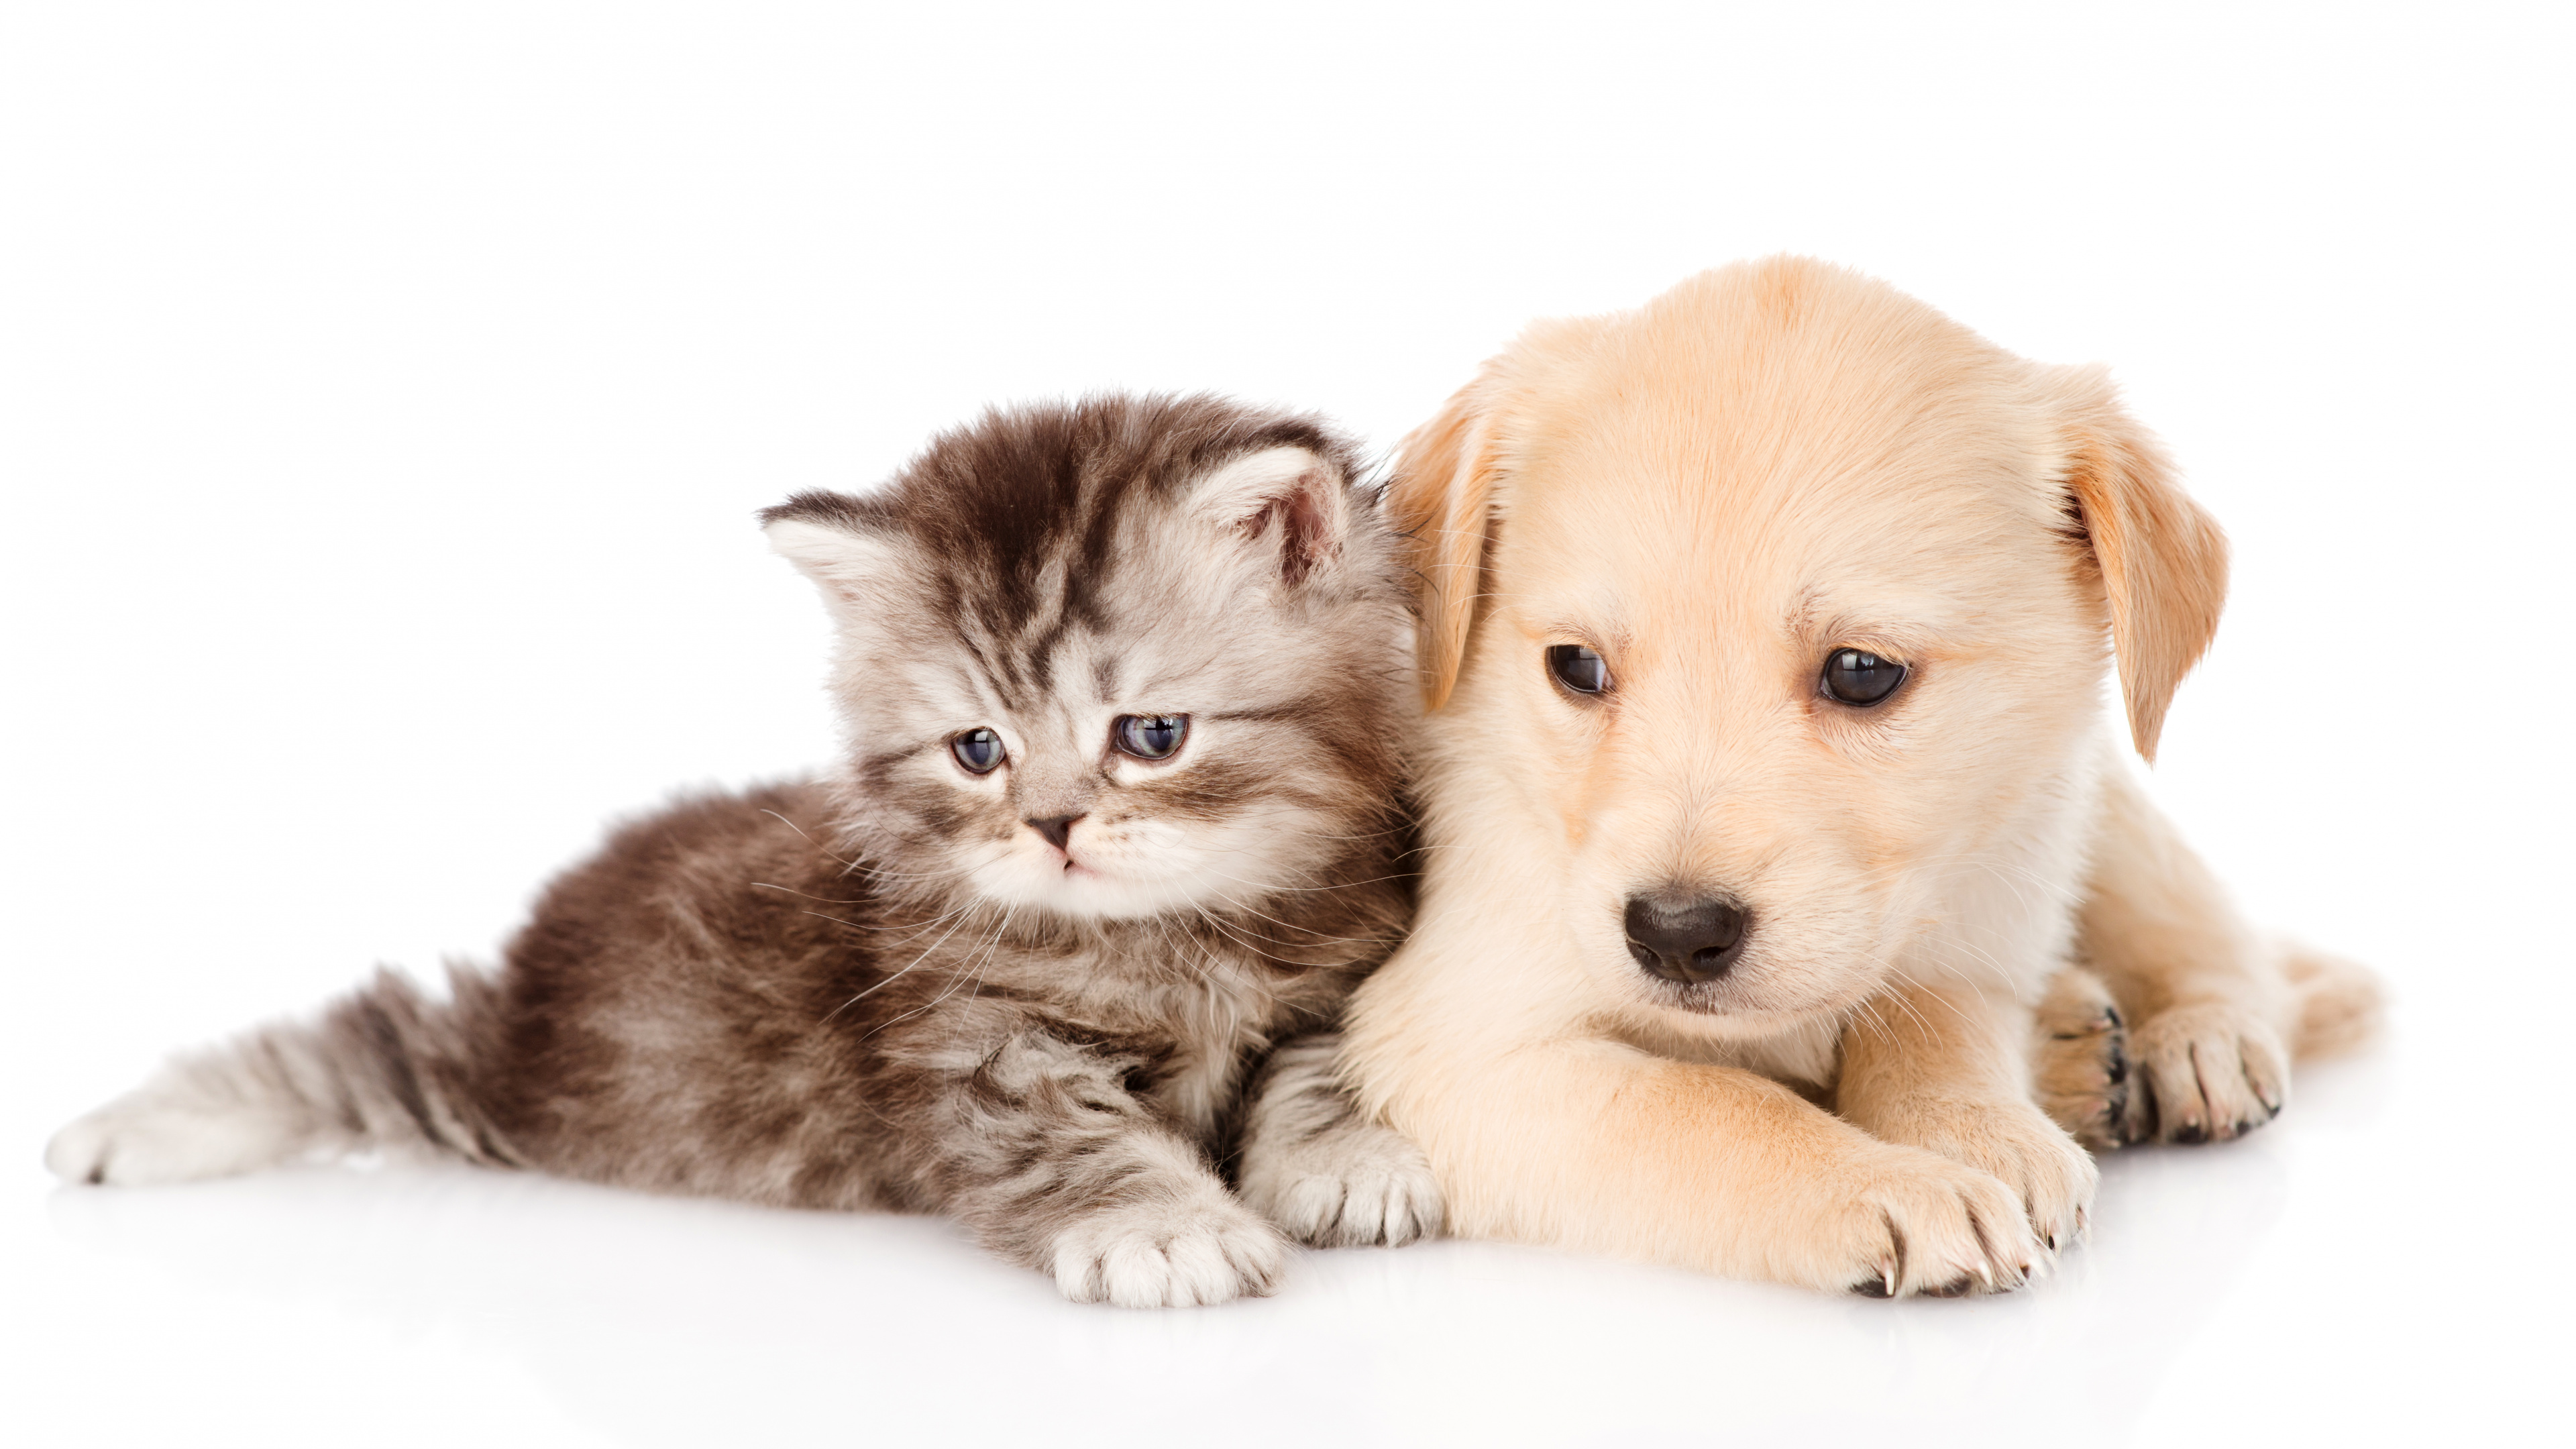 小狗, 小猫, 黄金猎犬, 品种的狗, 狗喜欢哺乳动物 壁纸 3840x2160 允许